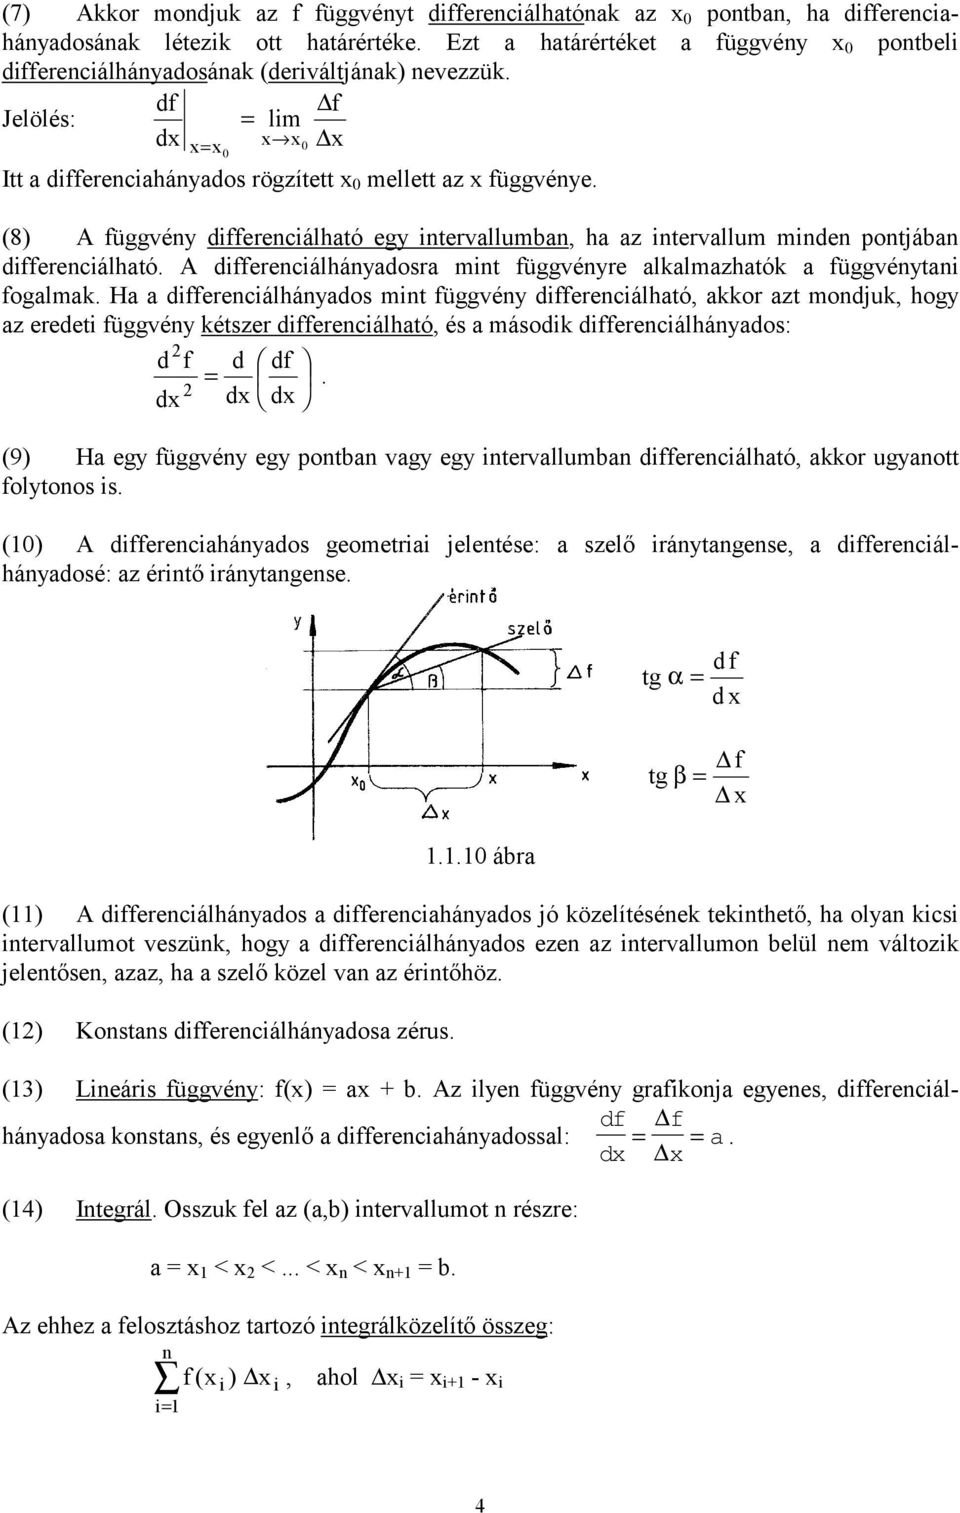 (8) A függvény differenciálható egy intervallumban, ha az intervallum minden pontjában differenciálható. A differenciálhányadosra mint függvényre alkalmazhatók a függvénytani fogalmak.